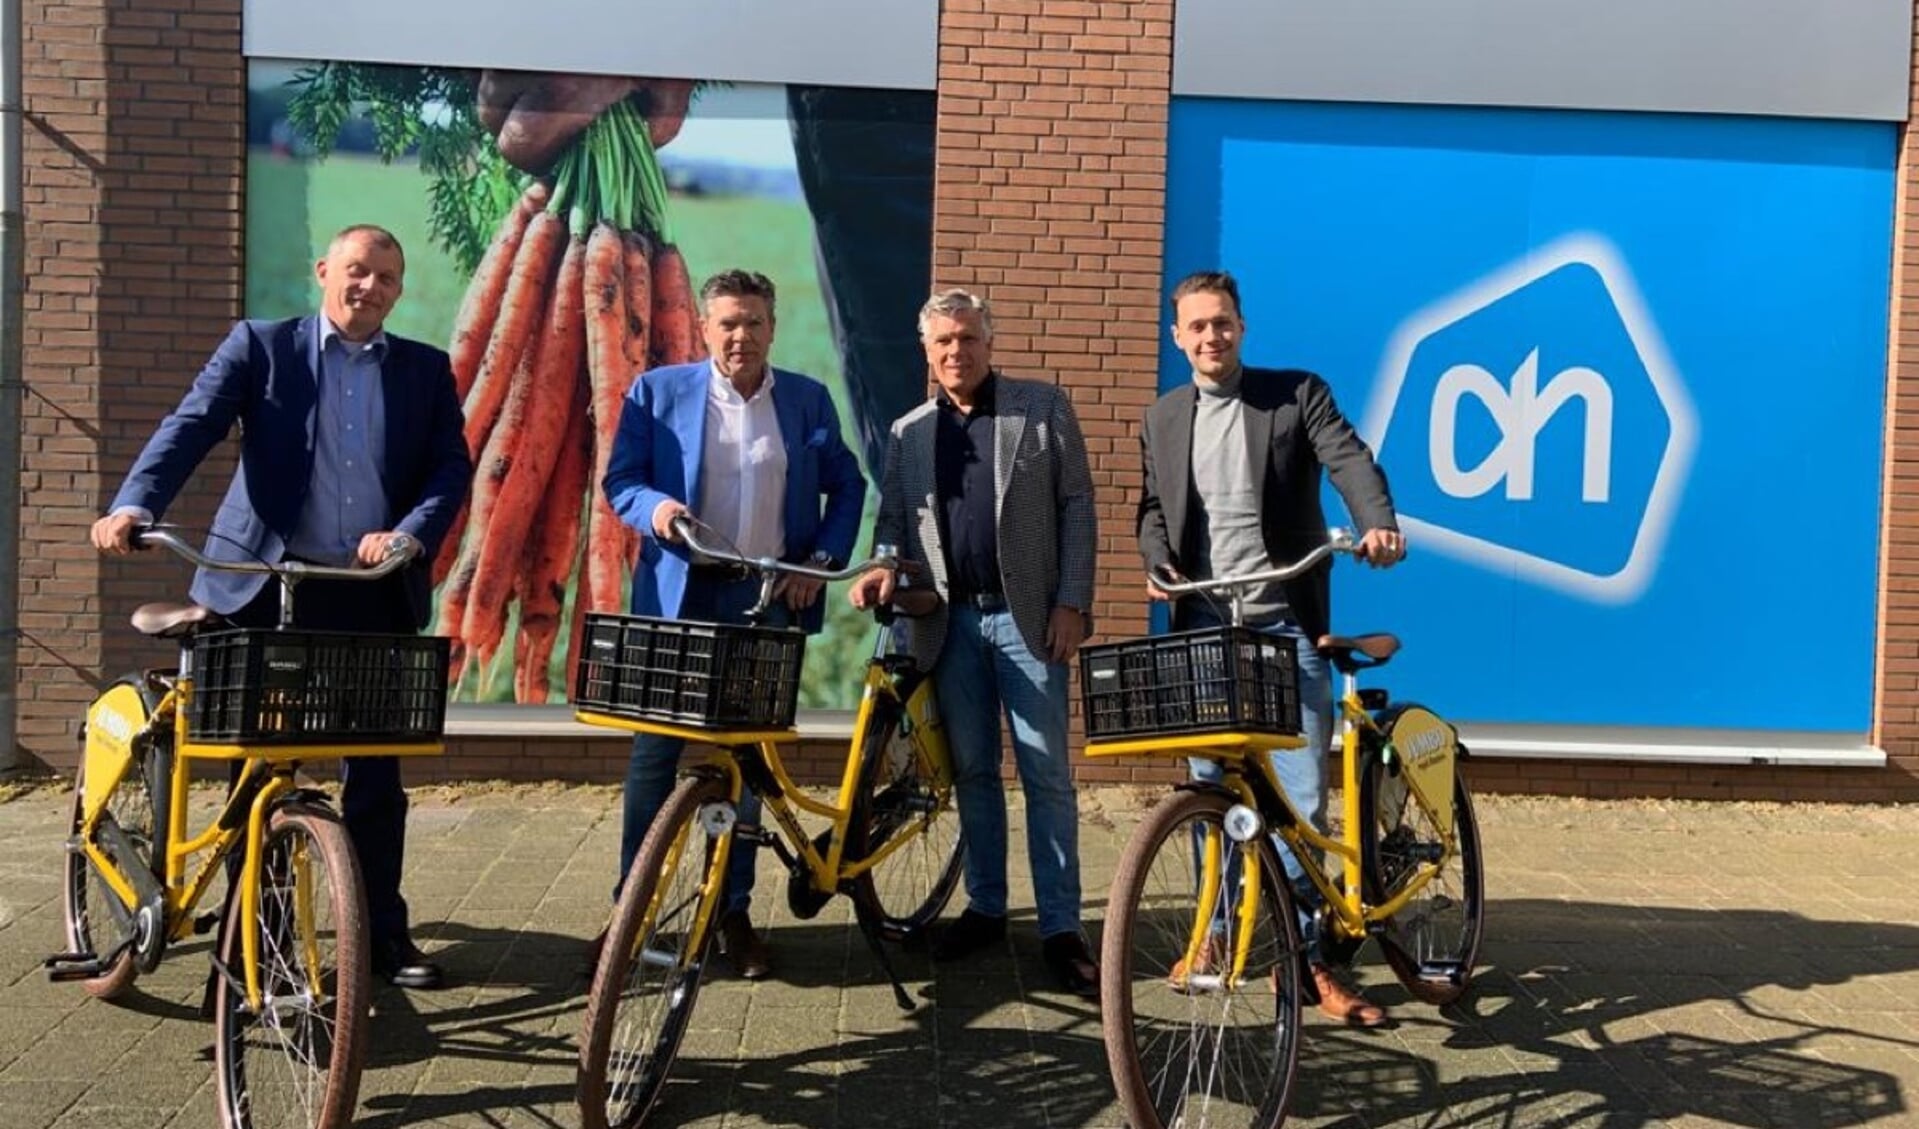 De Albert Heijn en de twee Jumbo-supermarkten in Krimpen aan den IJssel starten met een gezamenlijke boodschappenservice.